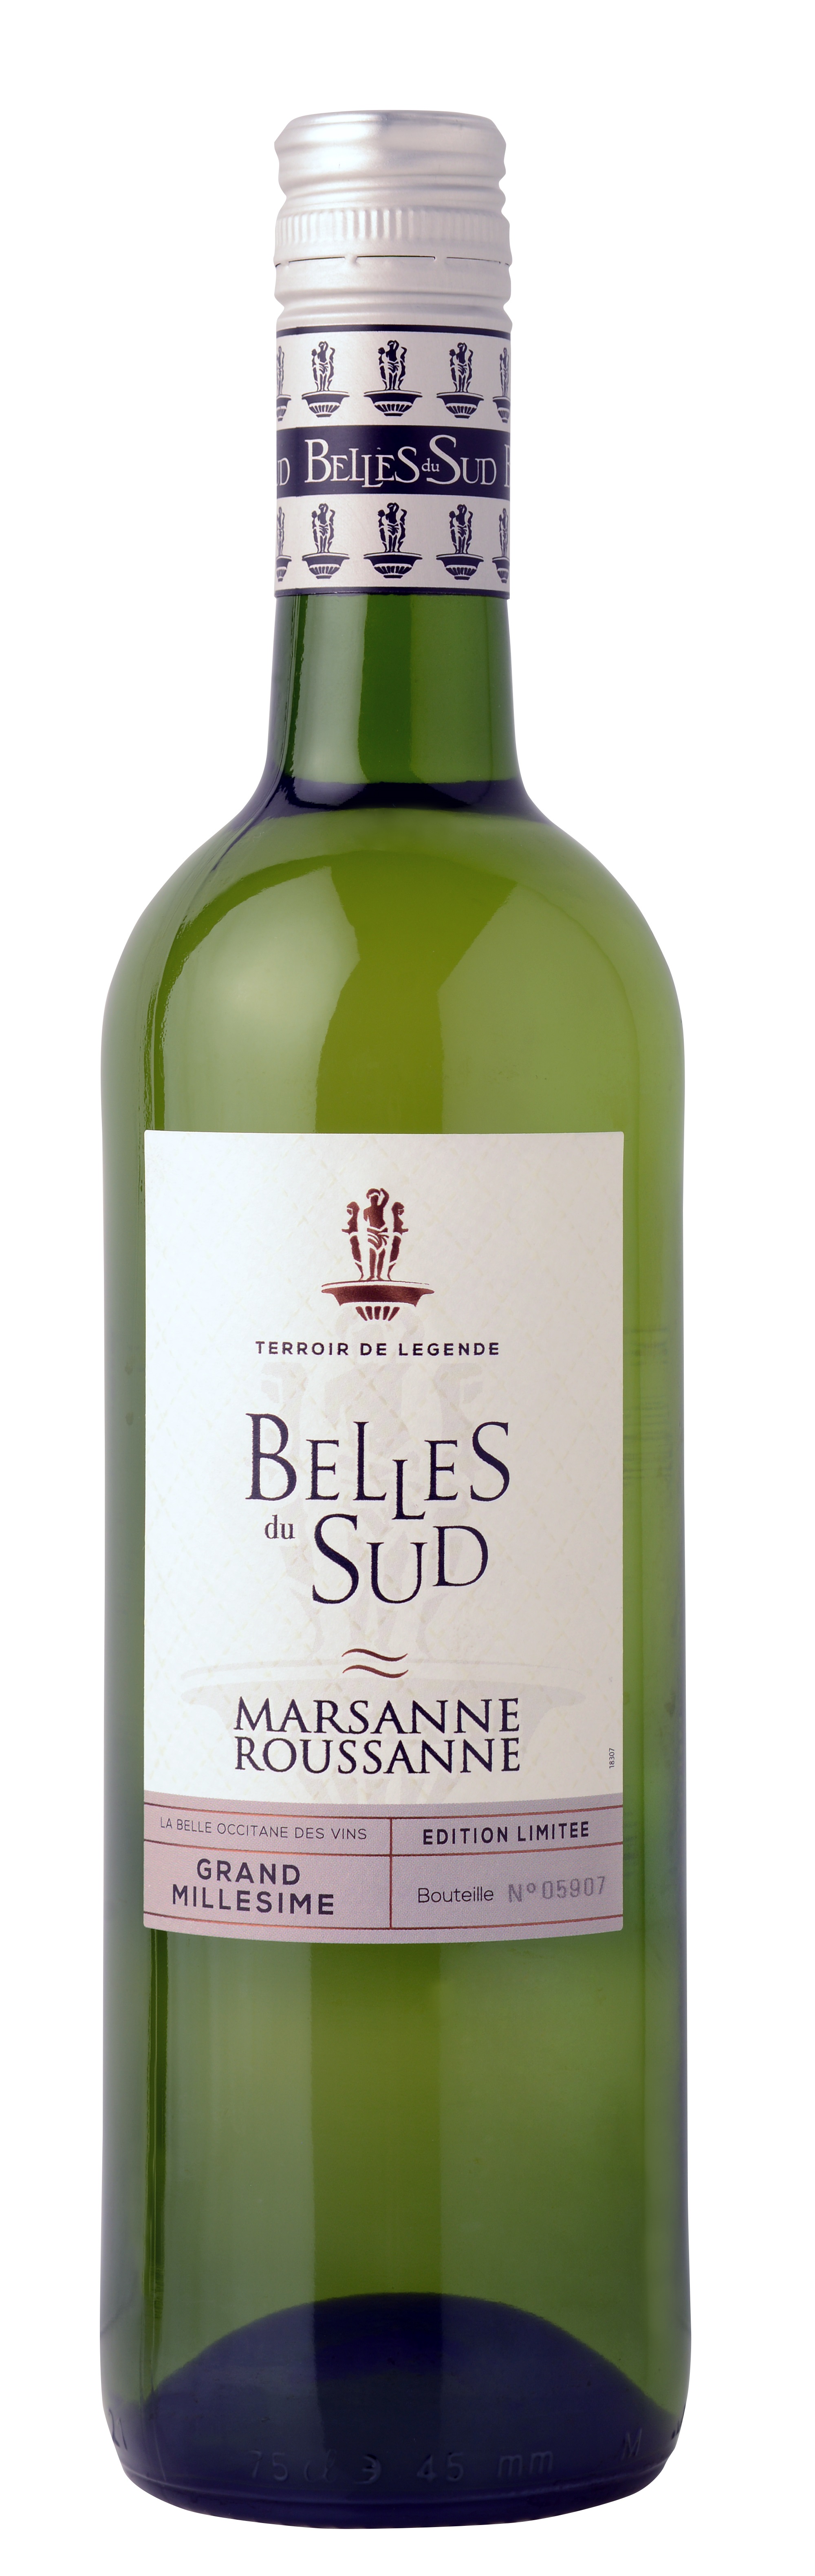 18654 Belles du Sud Marsanne Roussanne Blanc 0,75 liter